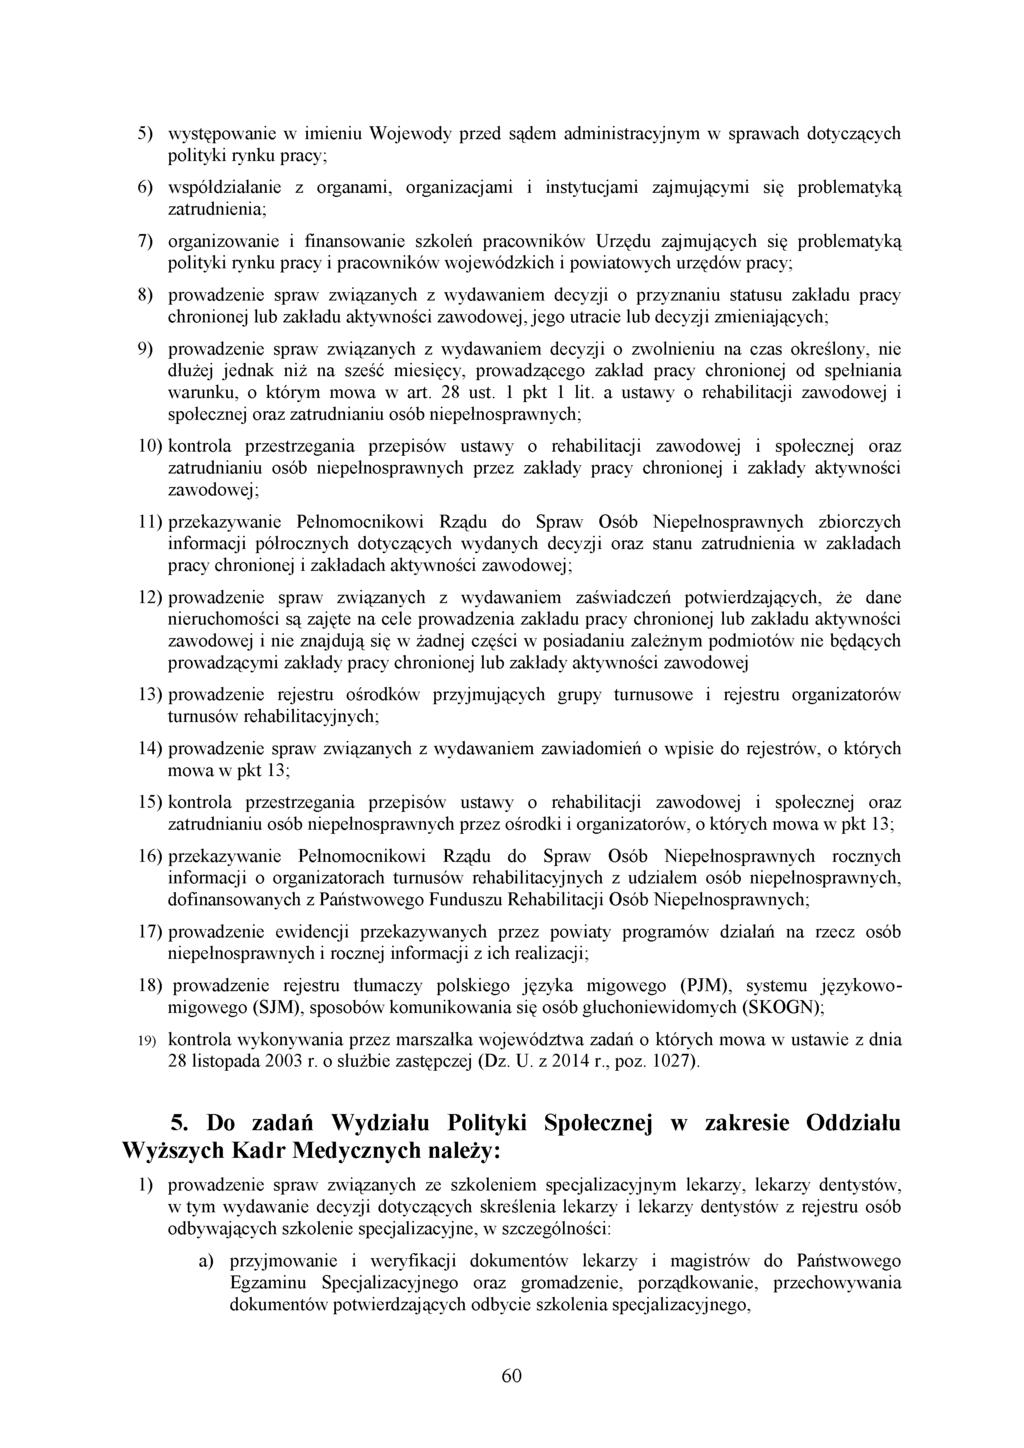 5) występowanie w imieniu Wojewody przed sądem administracyjnym w sprawach dotyczących polityki rynku pracy; 6) współdziałanie z organami, organizacjami i instytucjami zajmującymi się problematyką